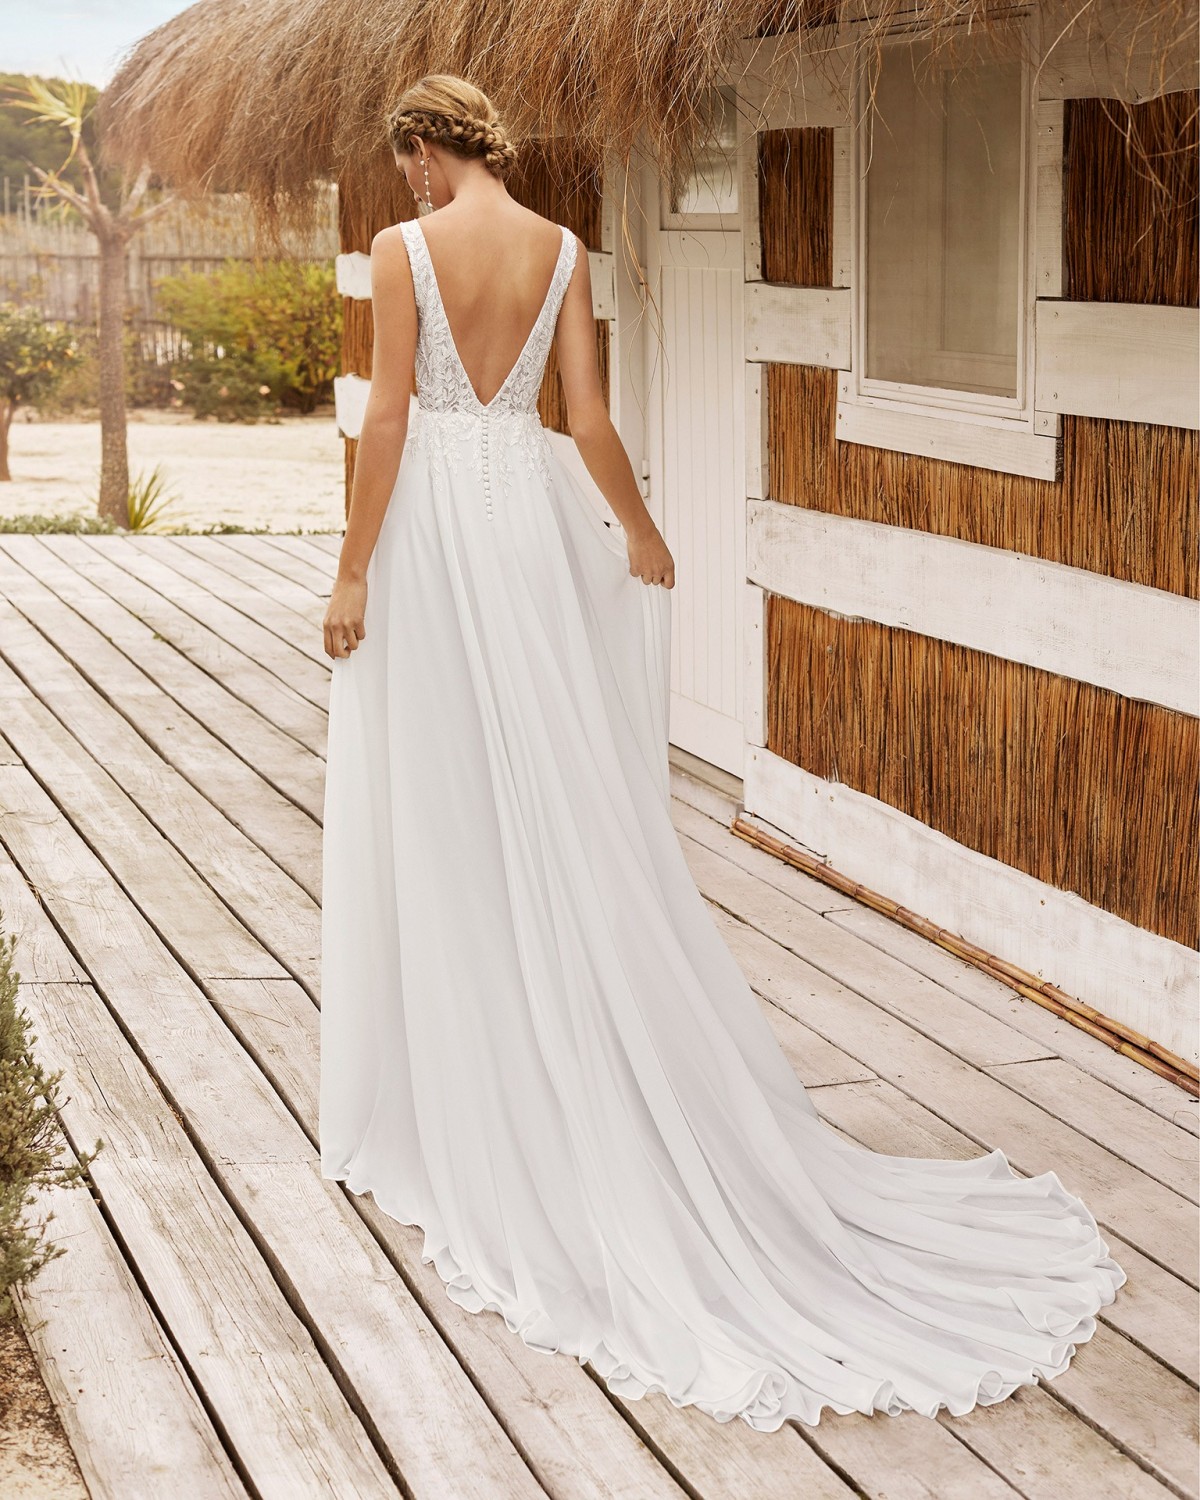 Vany - abito da sposa collezione 2021 - Aire Beach